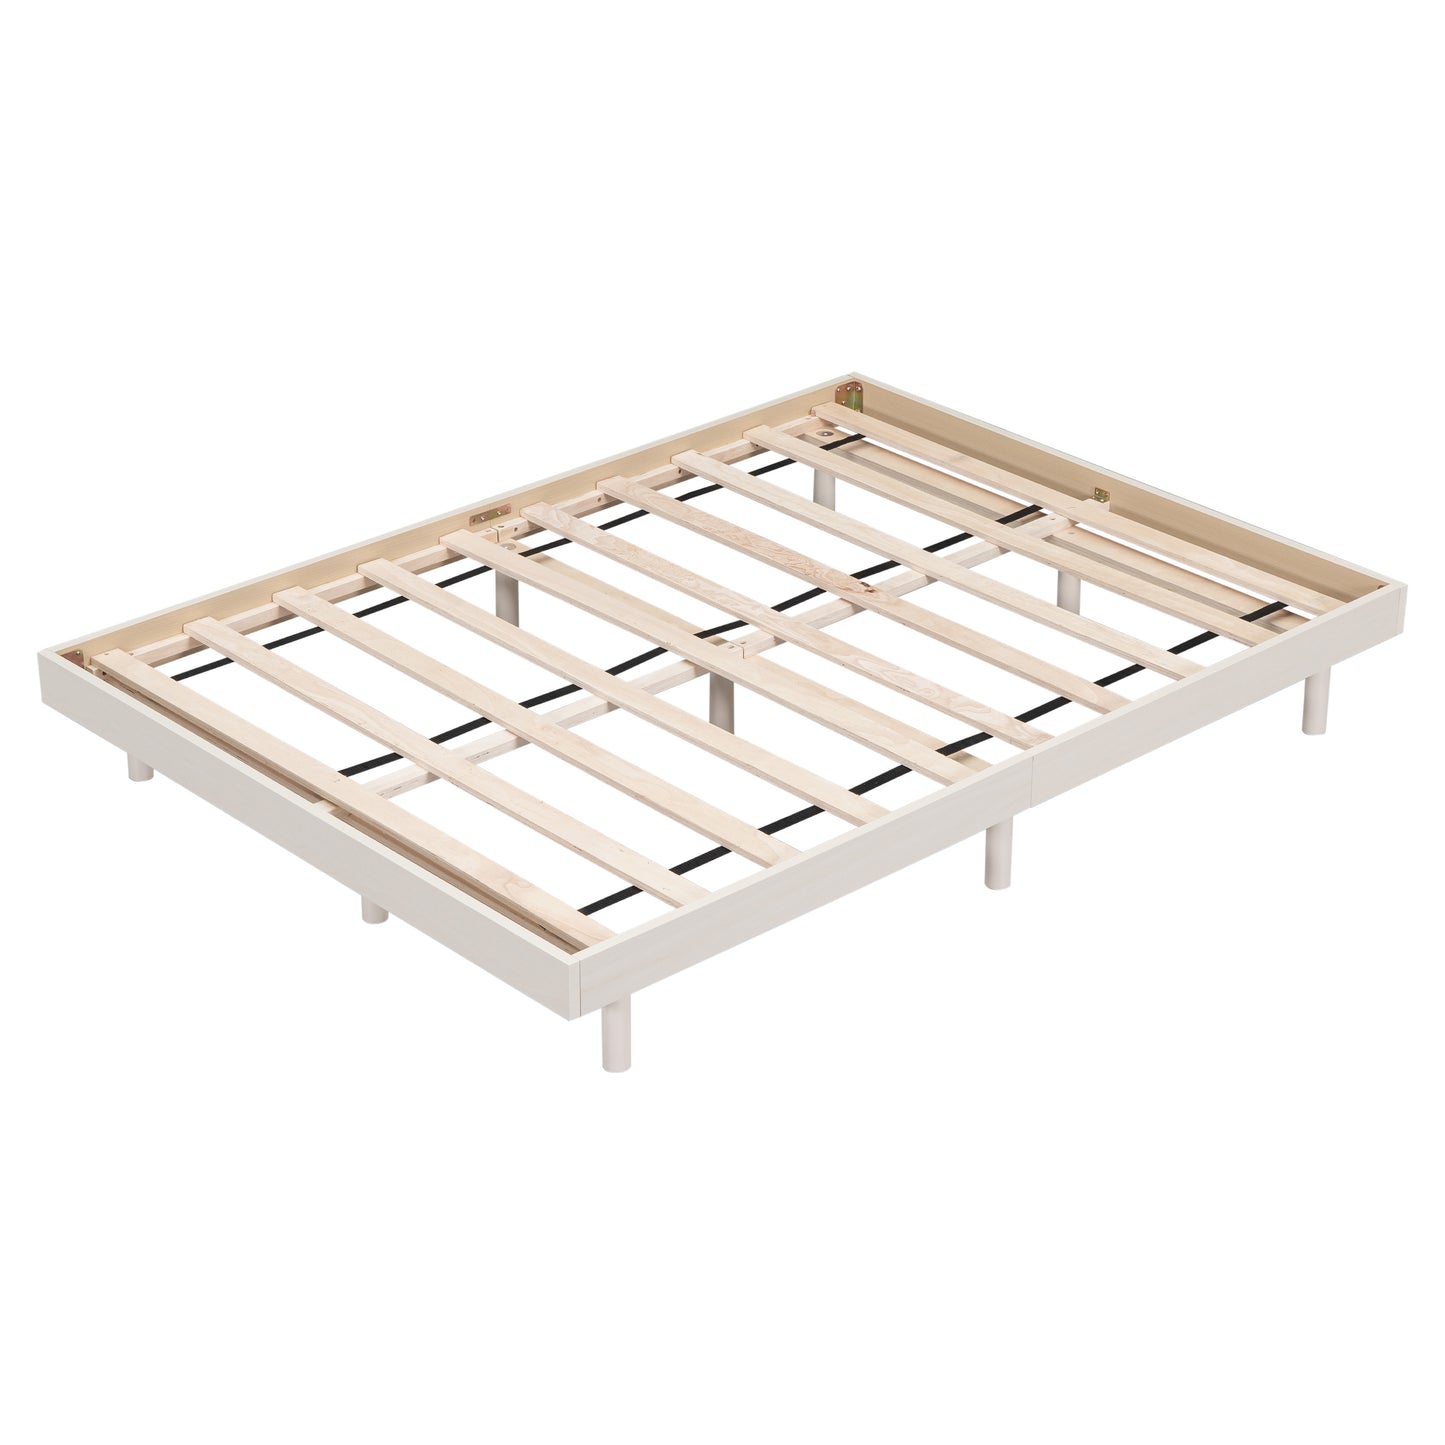 Modern Design Full Floating Platform Bed Frame for White Washed Color